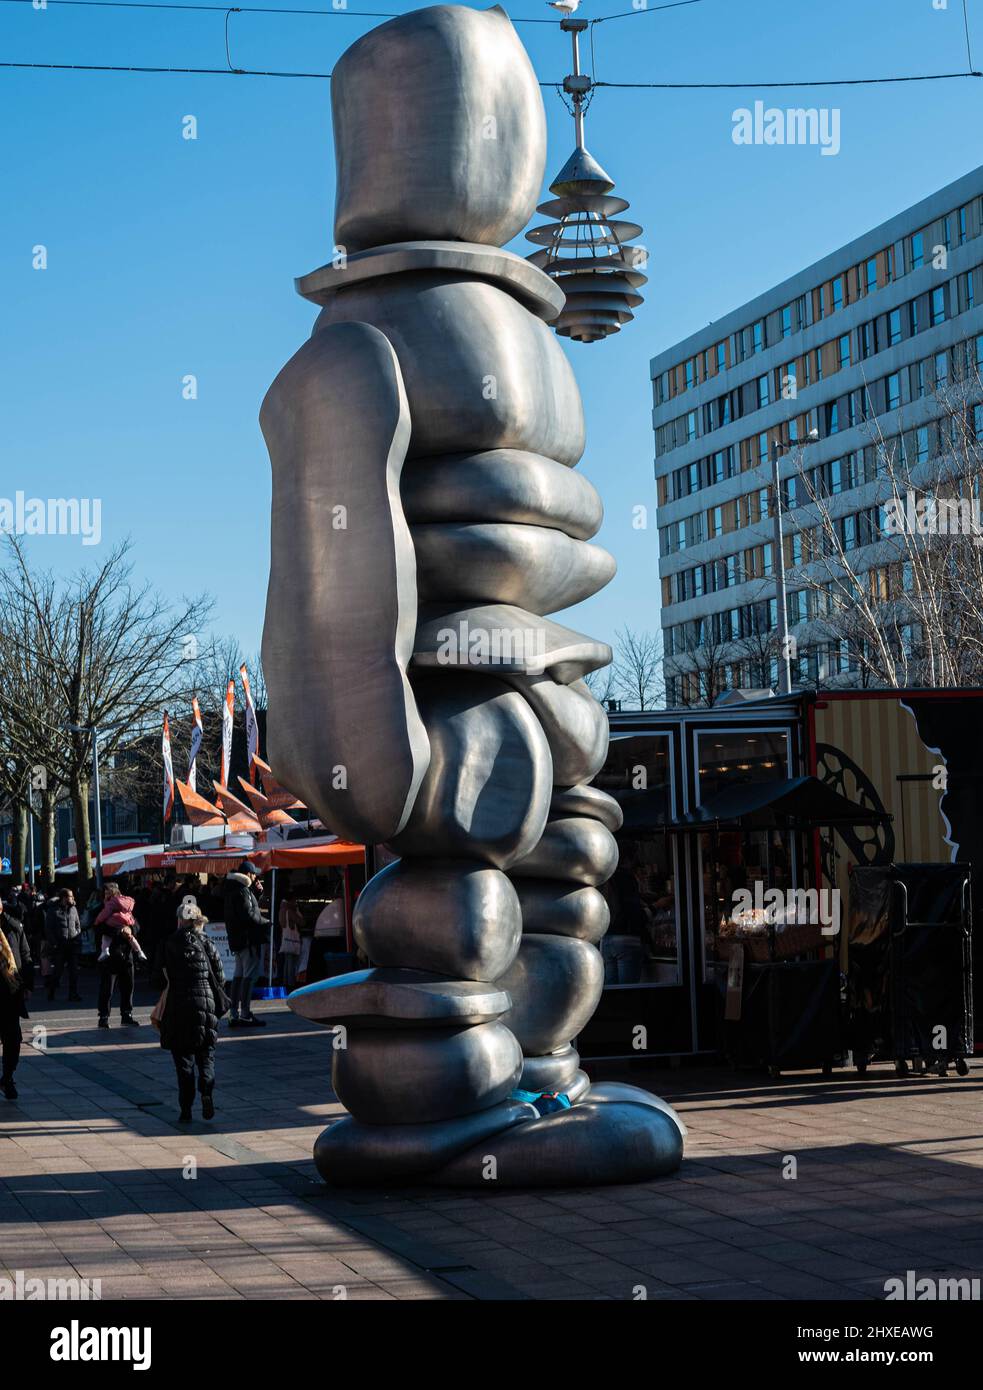 Het mannetje van Hoofdorp En medio de un mercado en Burgemeester van Stamplein en Hoofdorp, Holanda. Marzo 5 2022. Foto de stock